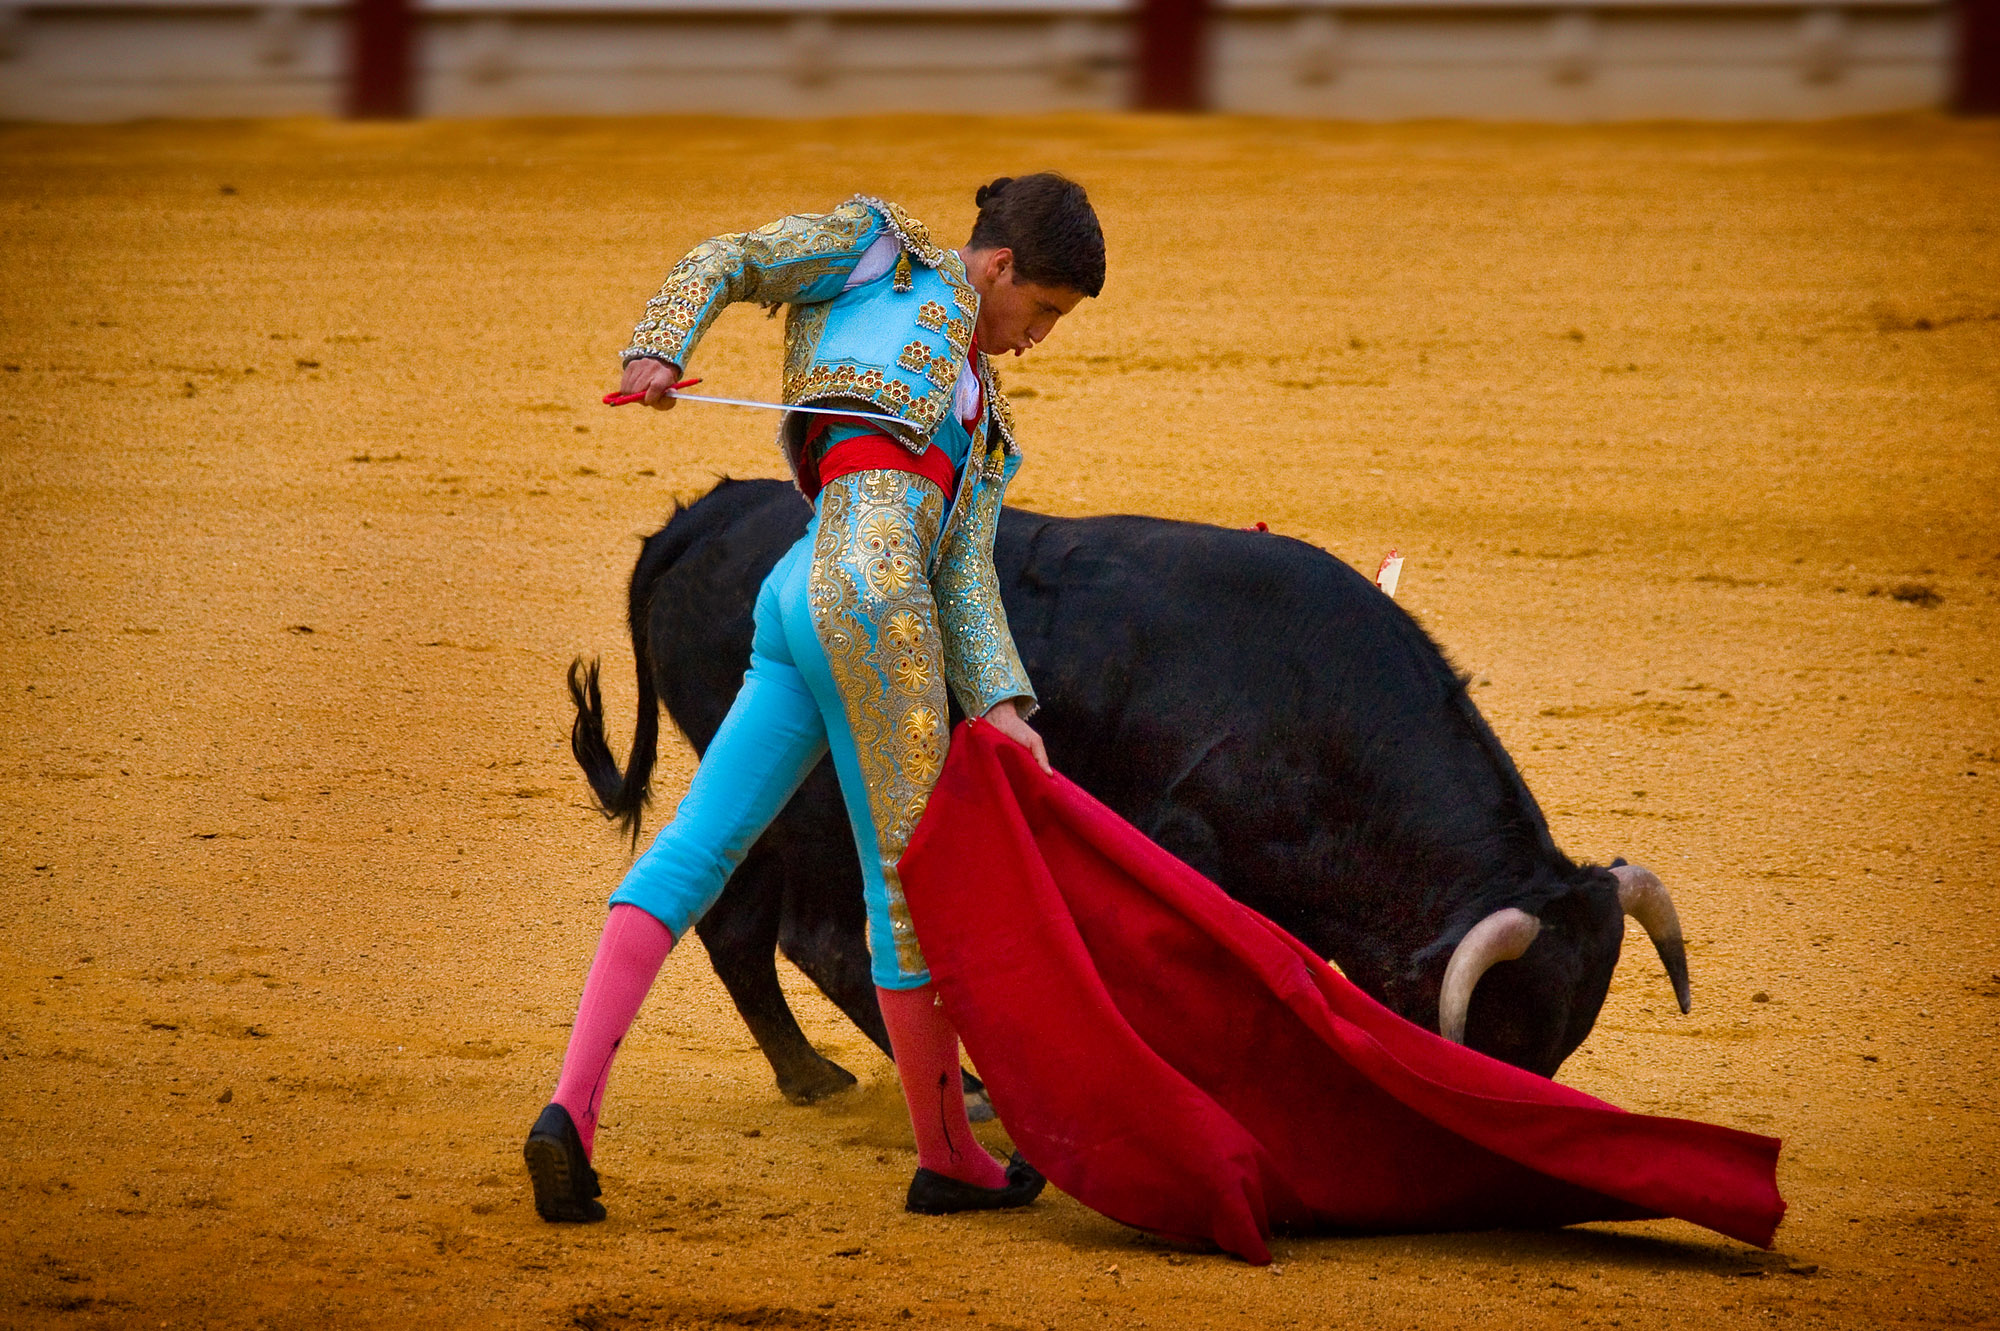 corrida, download photo, matador, desktop wallpapers, bull